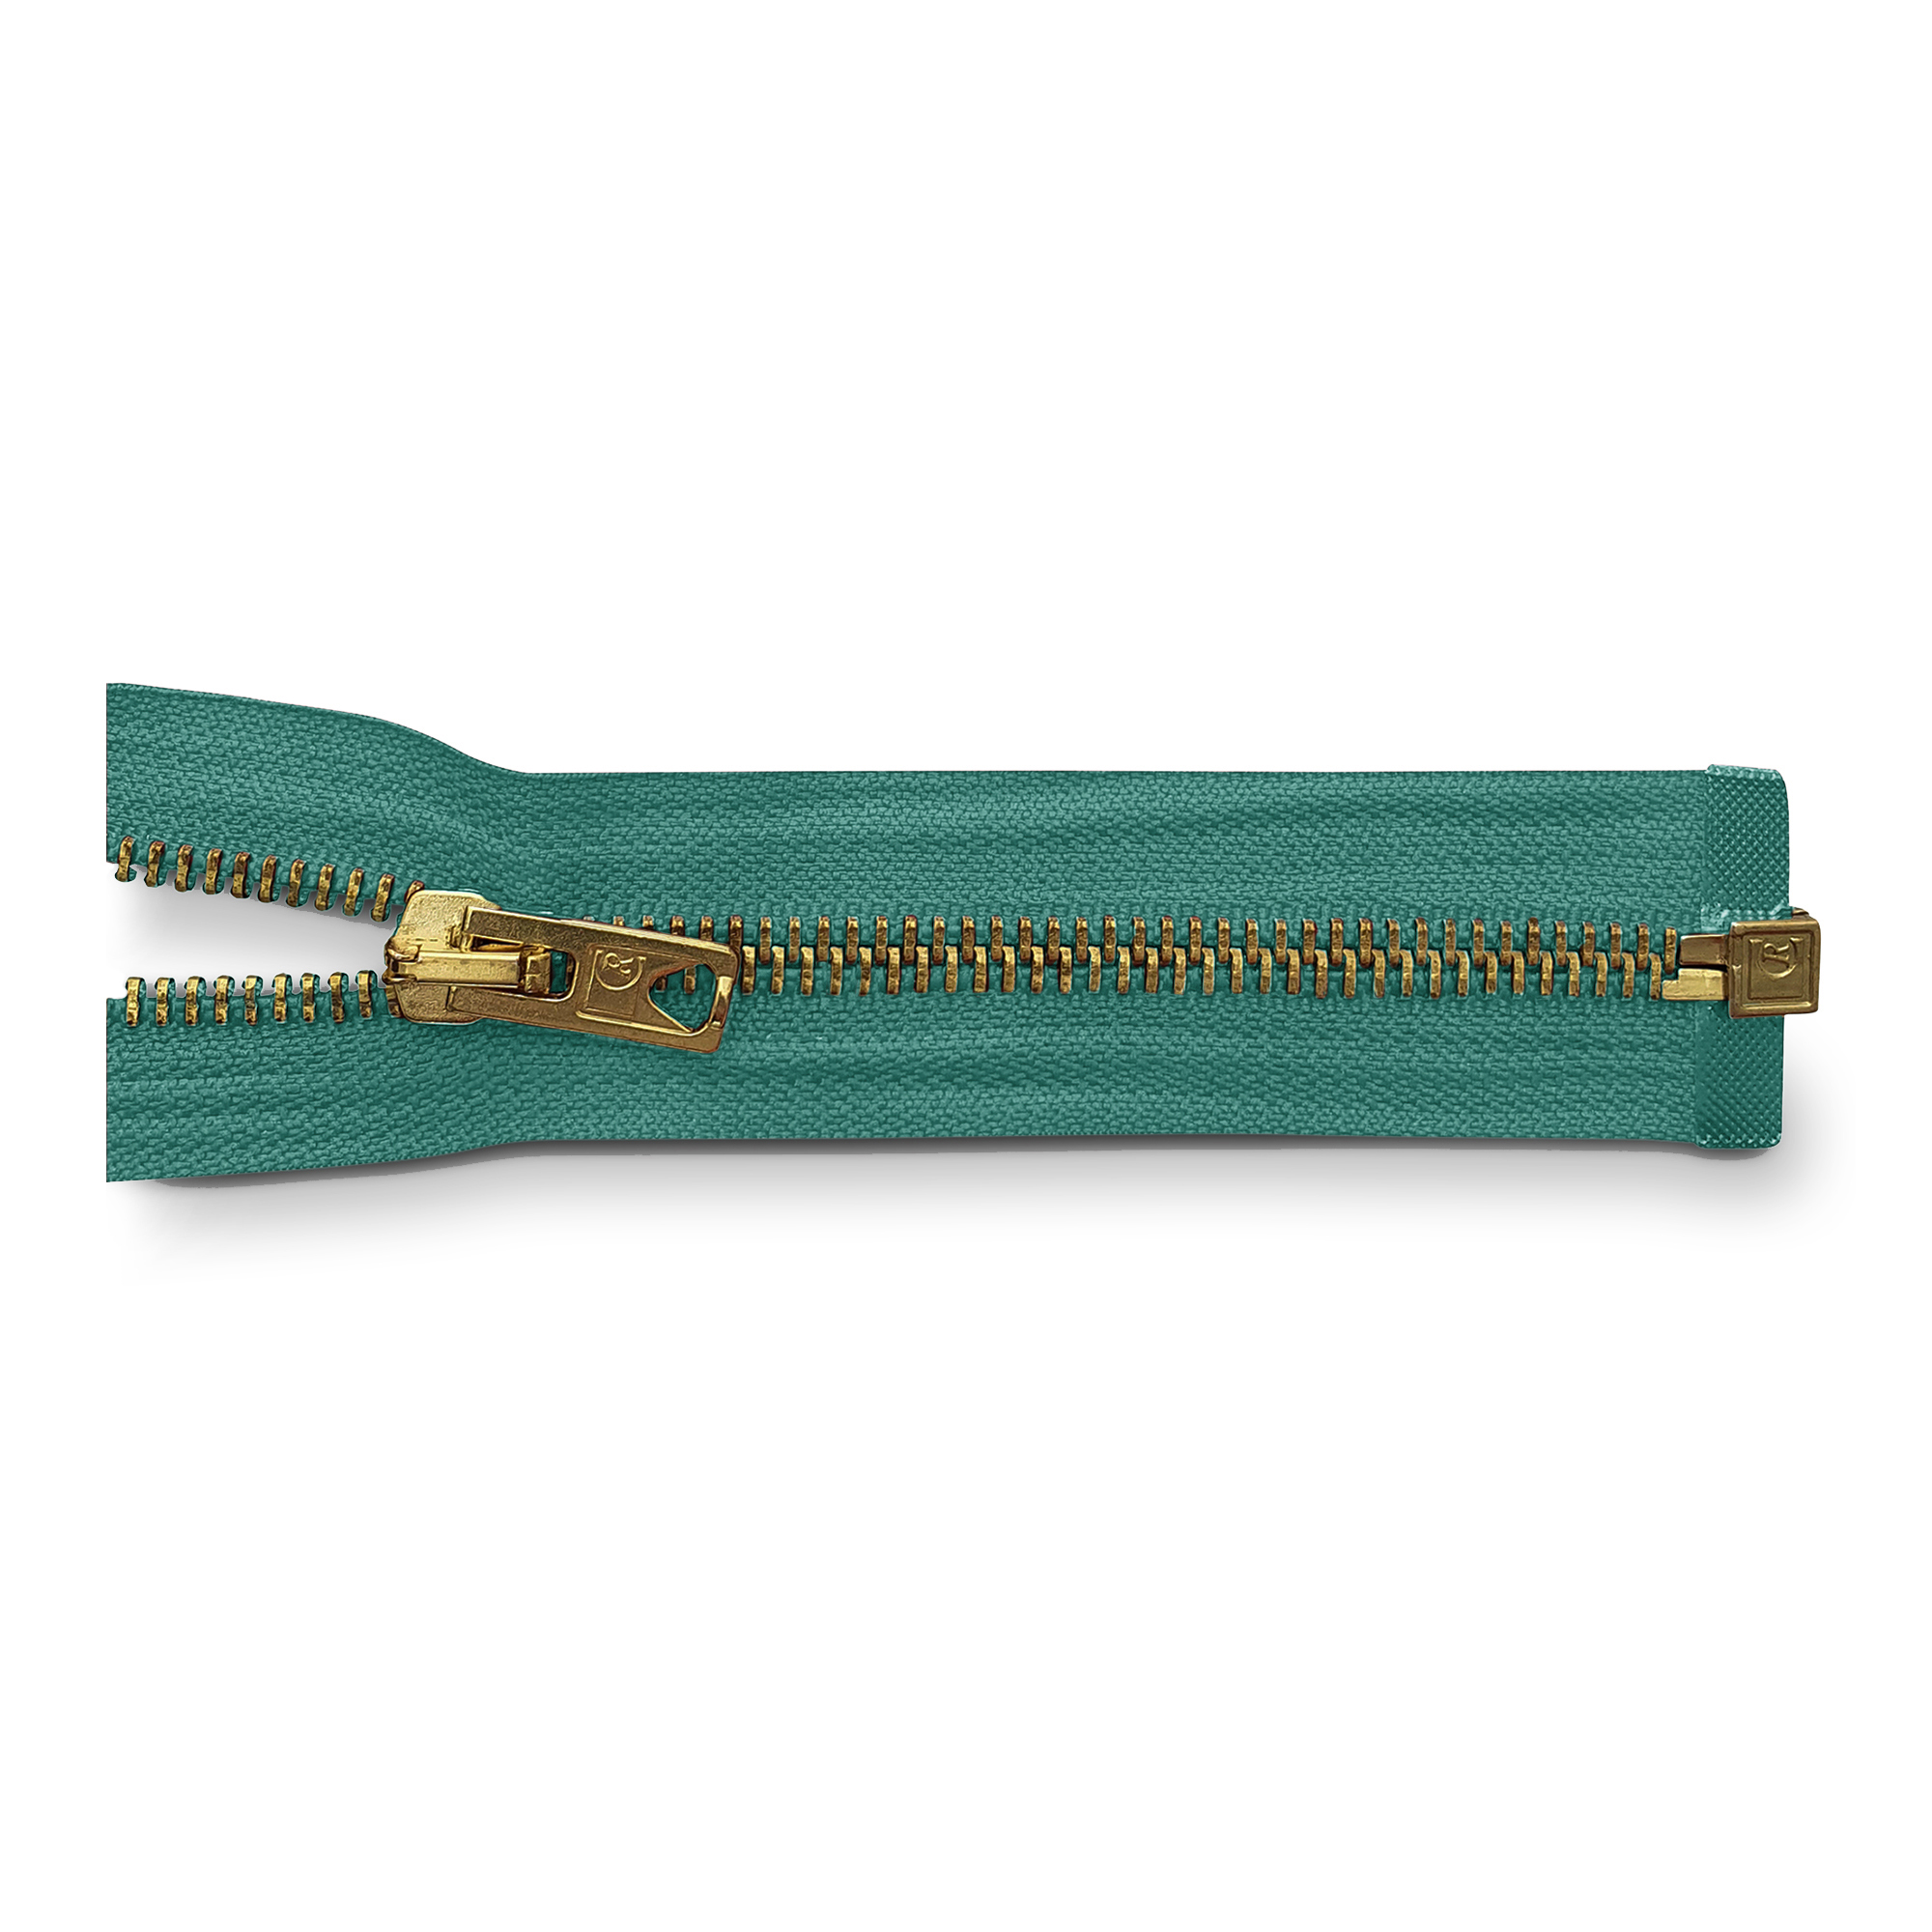 Reißverschluss, teilbar, Metall goldf. breit, blau-grün, hochwertiger Marken-Reißverschluss von Rubi/Barcelona